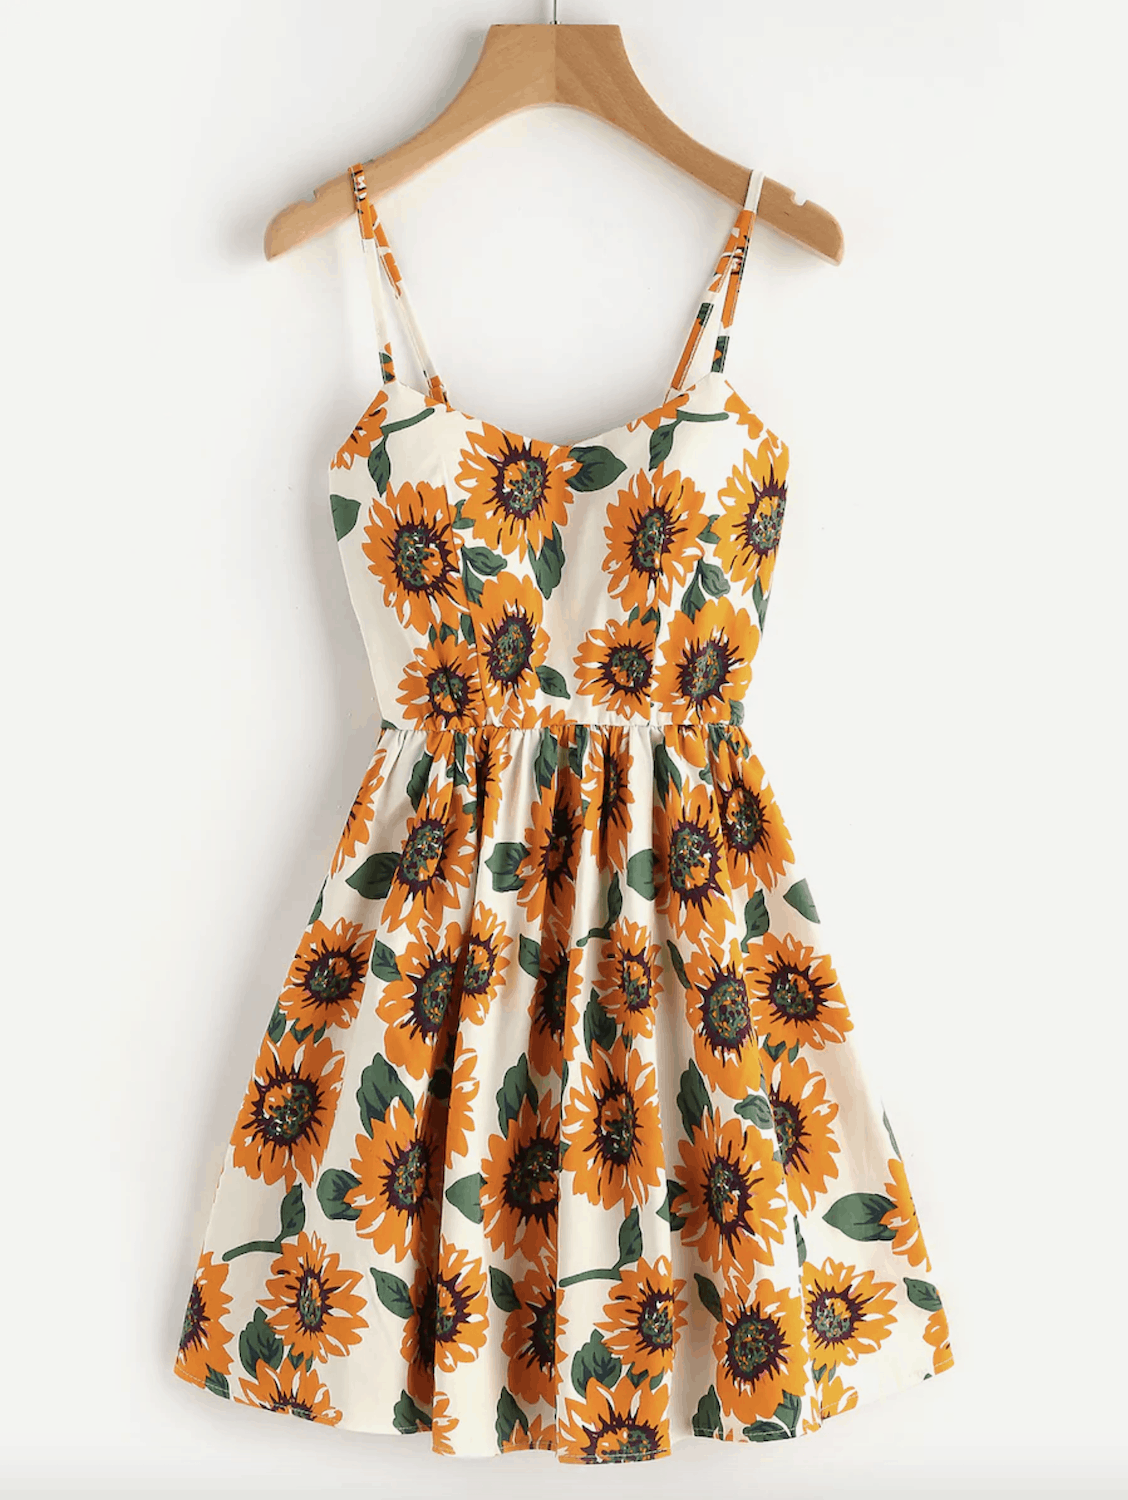 Summer Honeymoon Outfits Sunflower Print Crisscross Back A Line Cami Dress 2